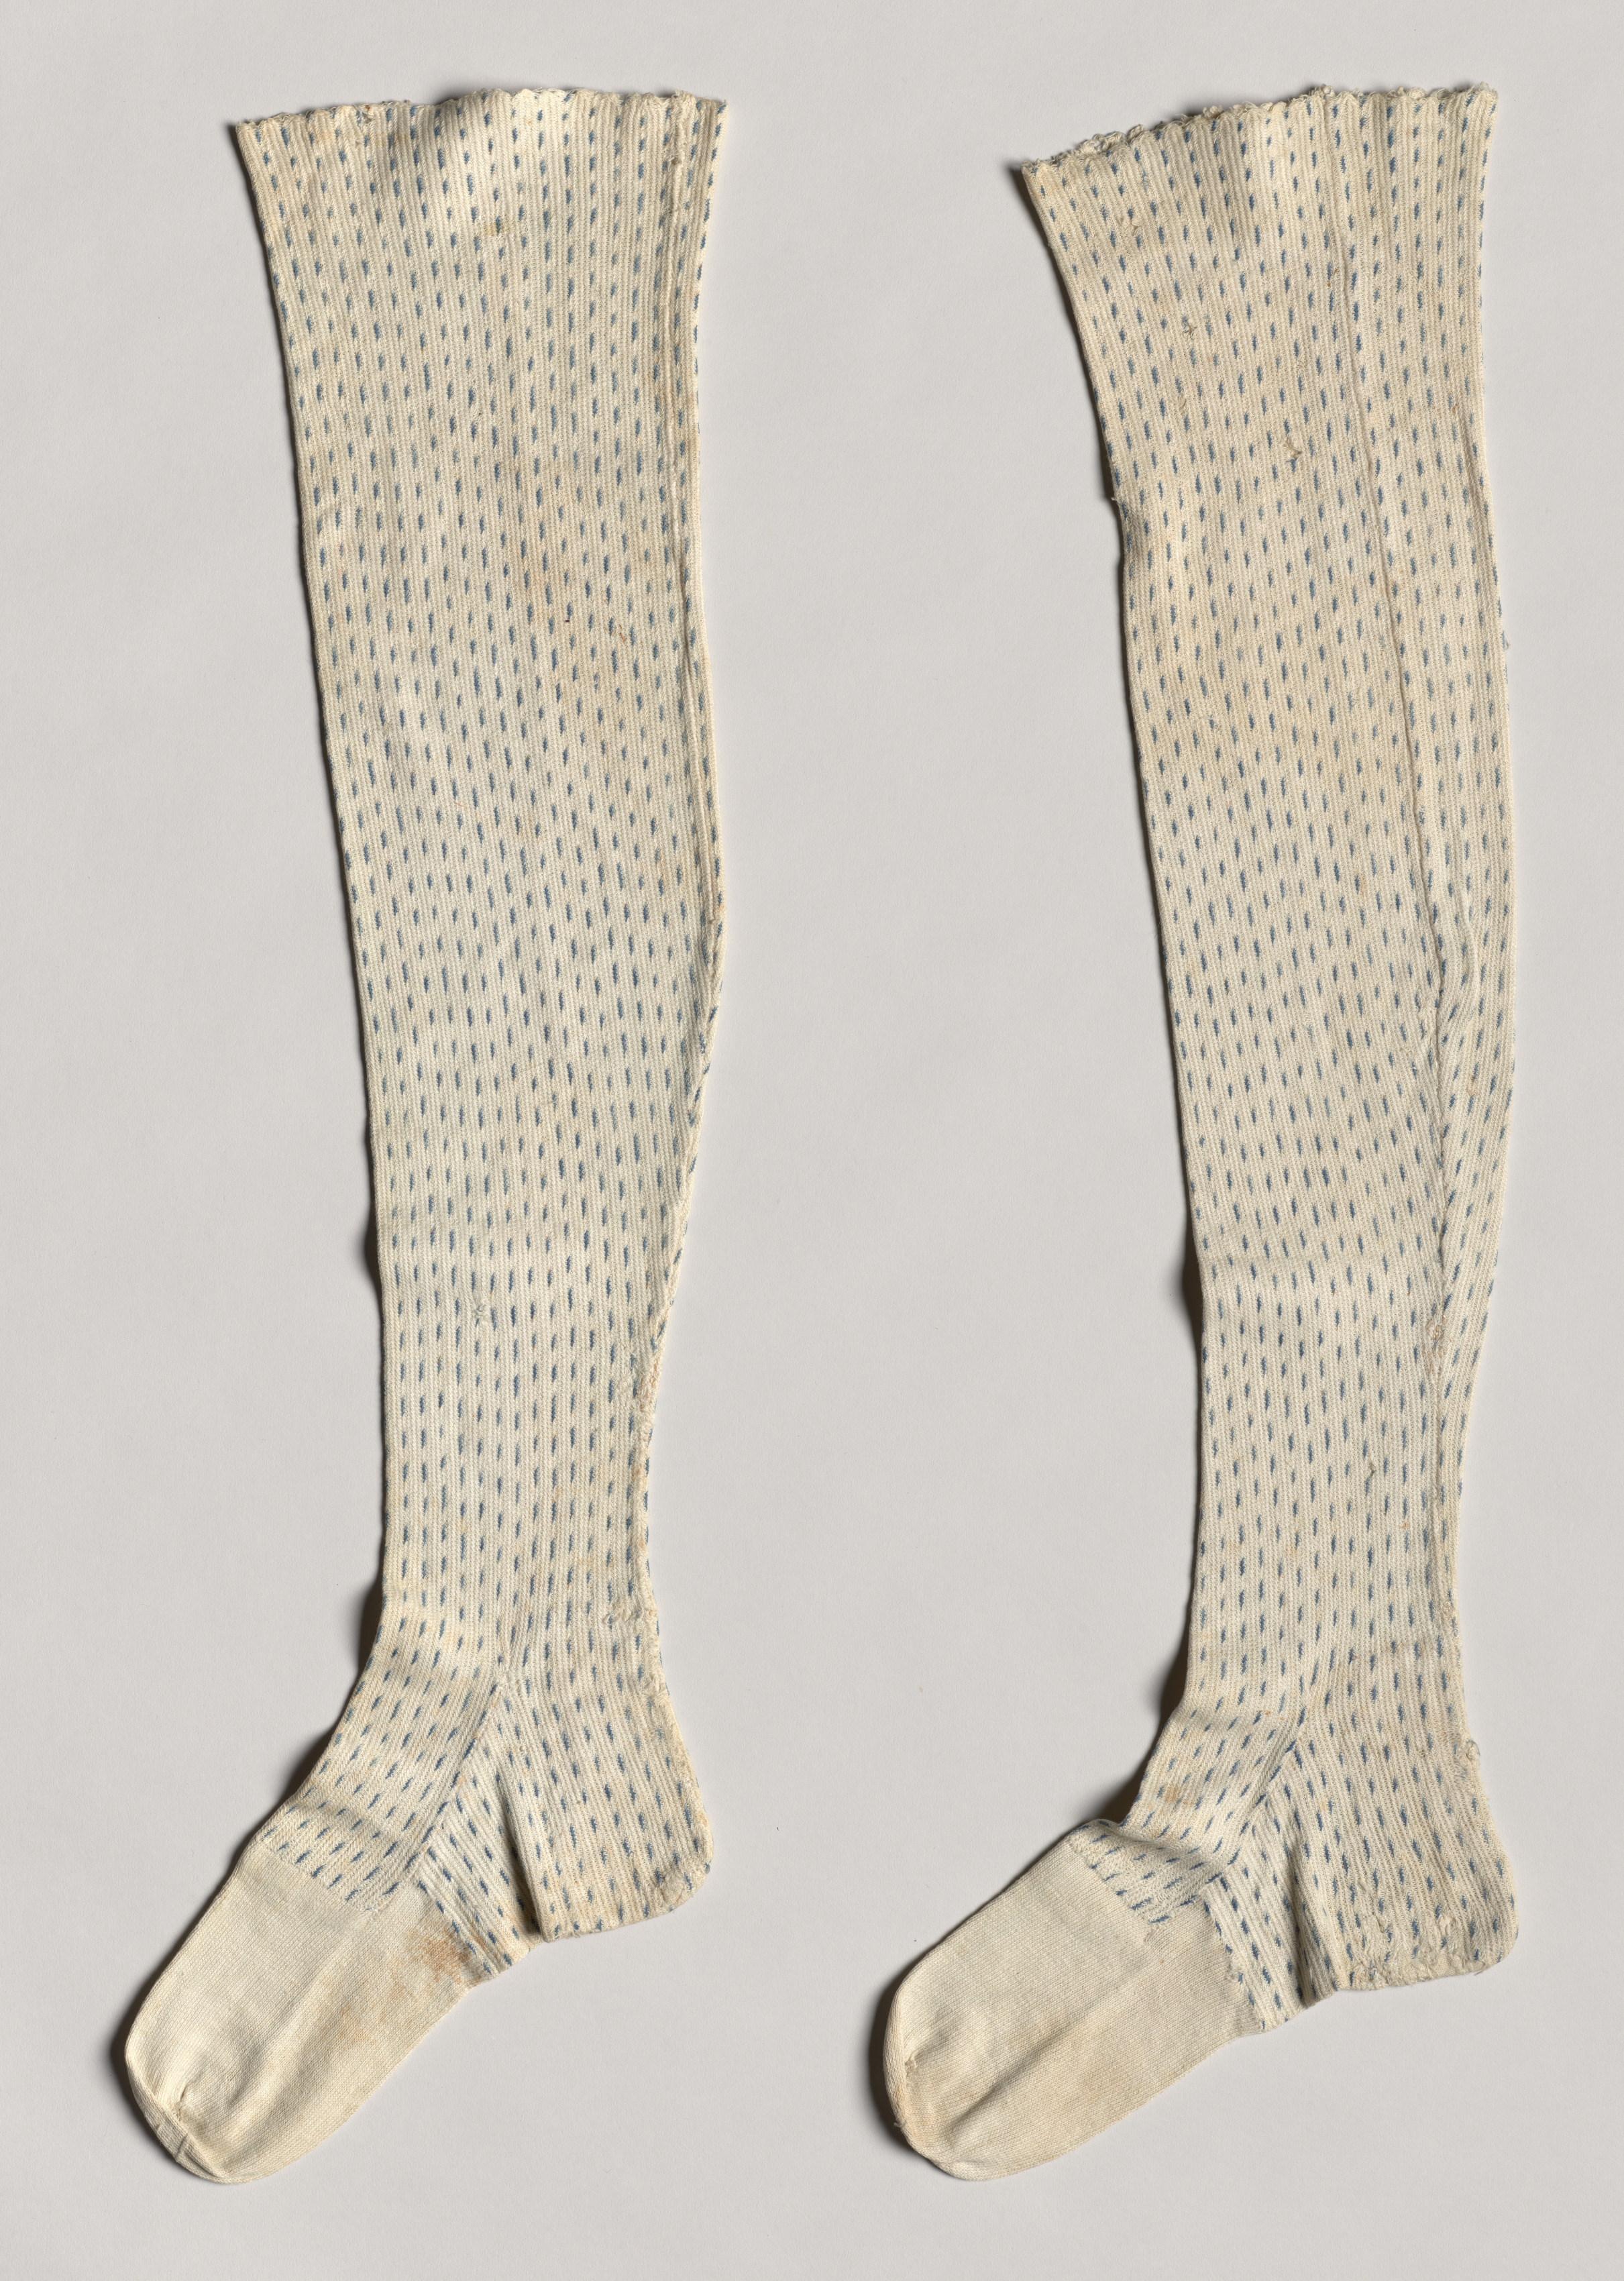 Pair of Stockings